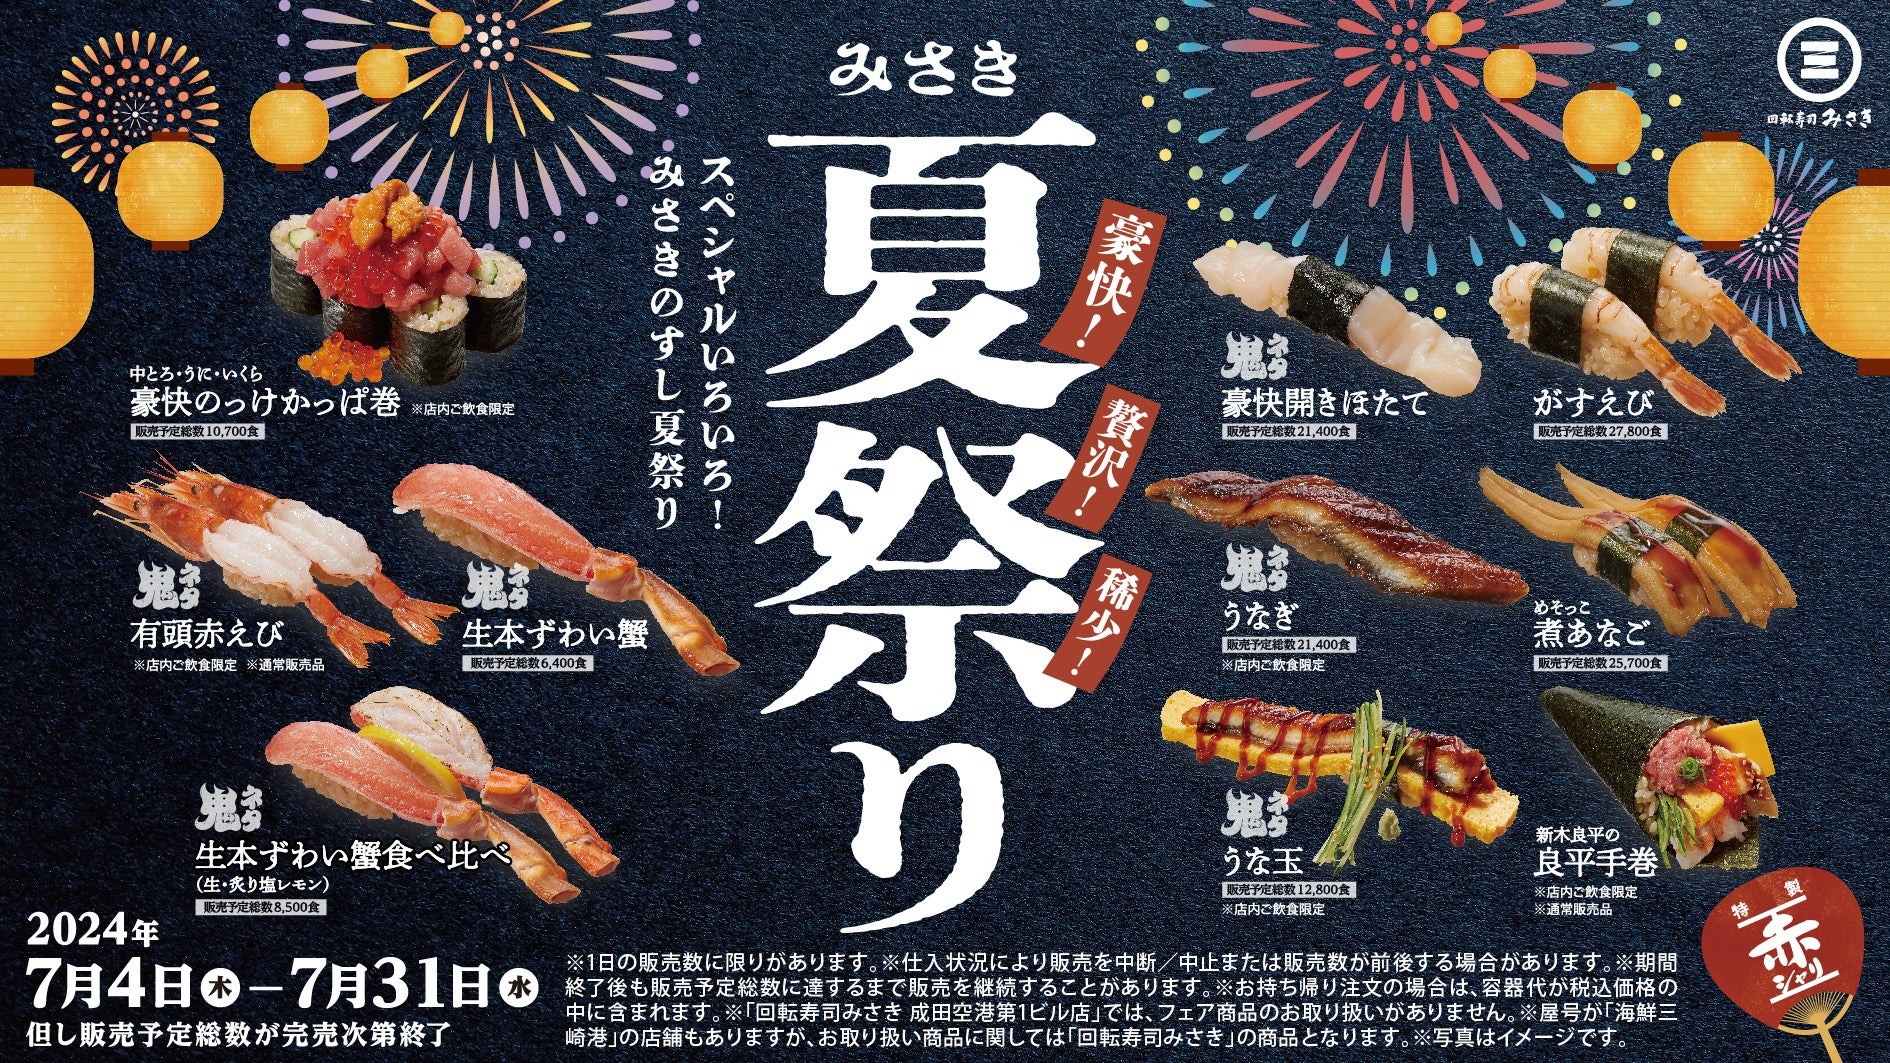 豪快！贅沢！稀少！スペシャルな寿司が盛りだくさん！“特製赤シャリ”と楽しめる『みさき夏祭り』開催！豪快！頭付き赤えびに、中とろ・うに・いくらをのせた贅沢なかっぱ巻も！